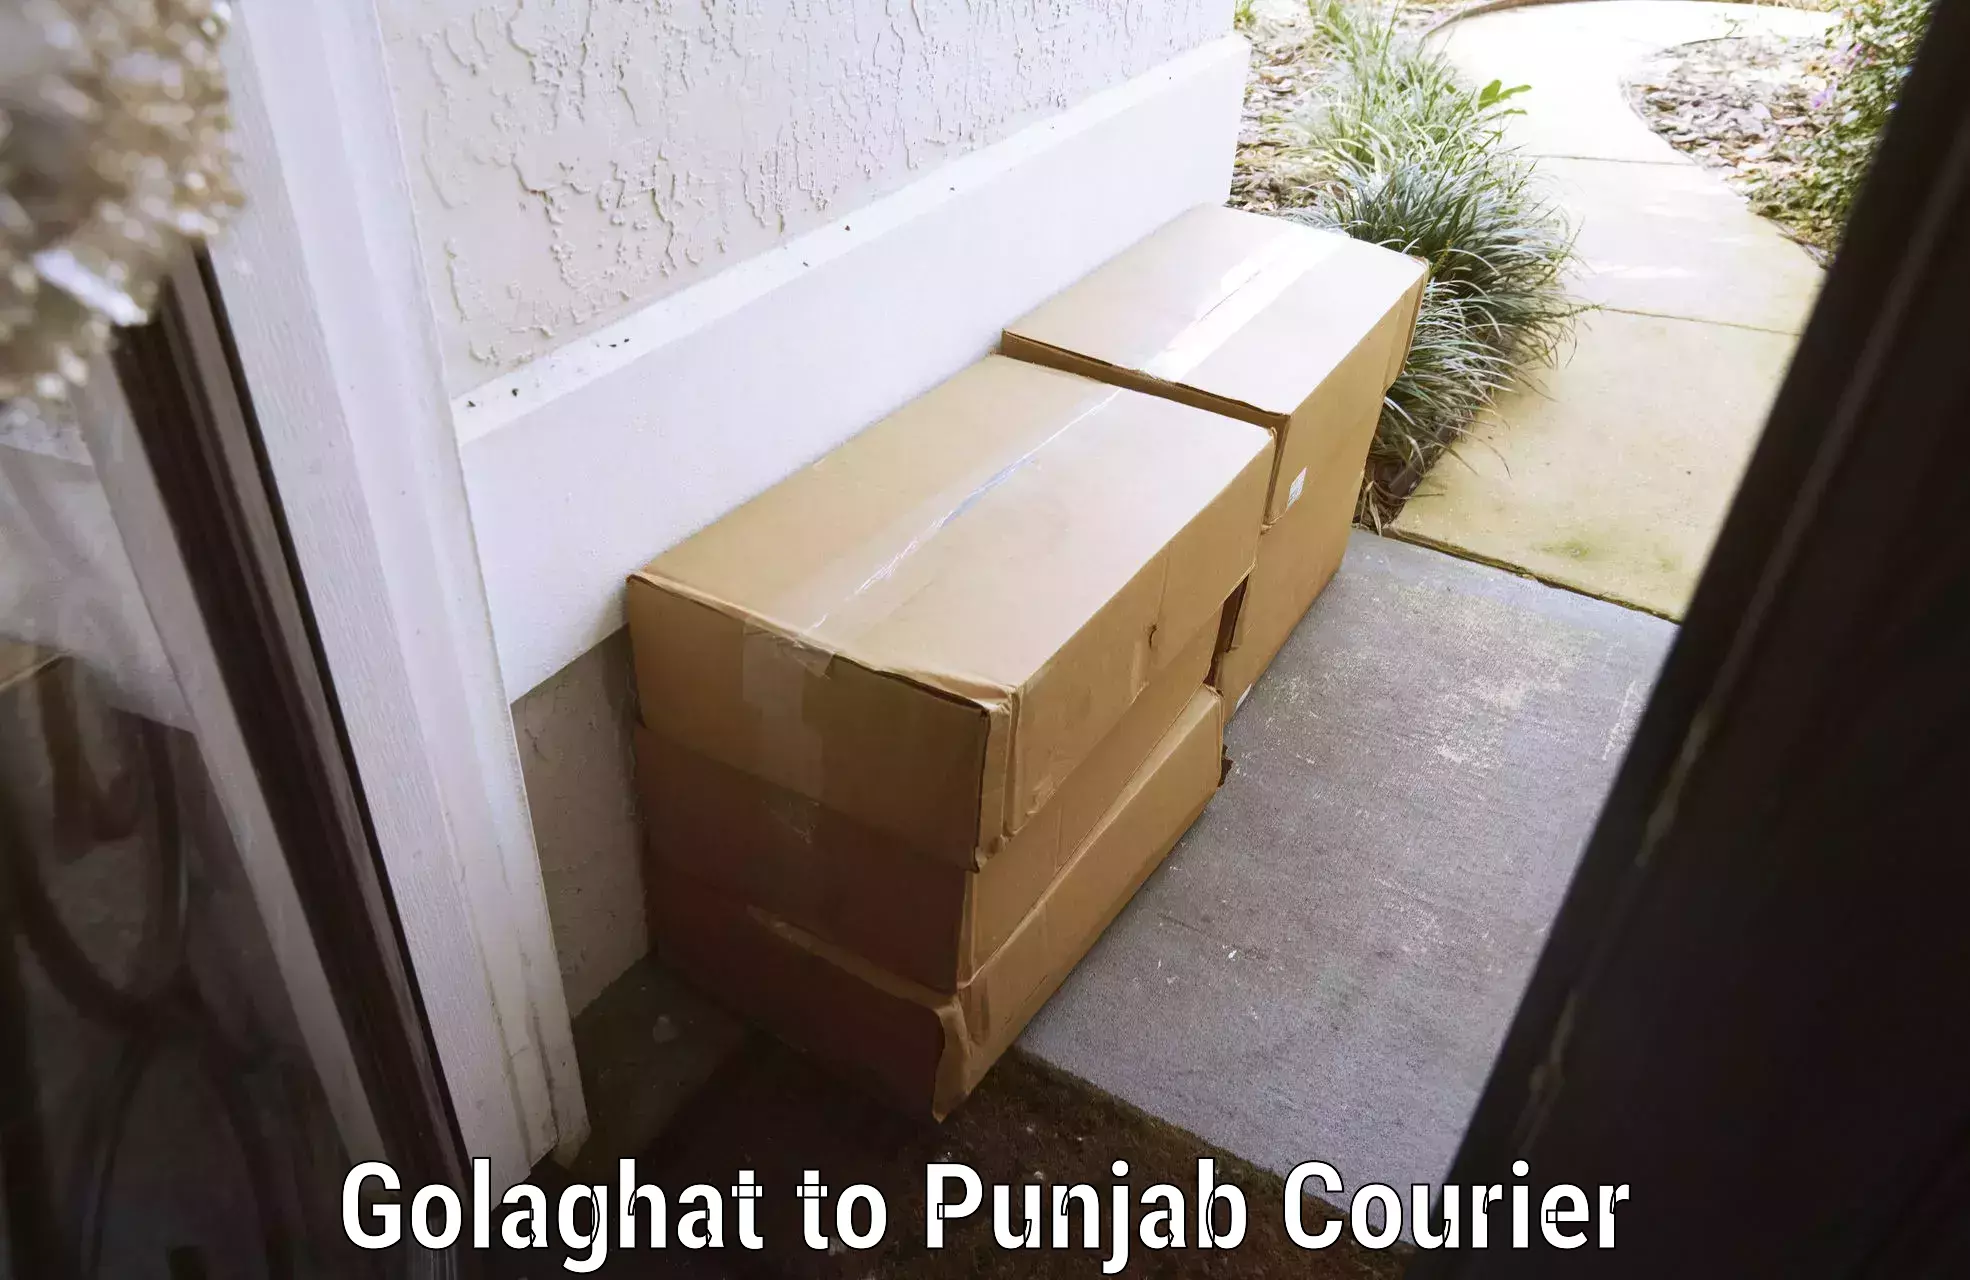 Baggage transport scheduler Golaghat to Ropar